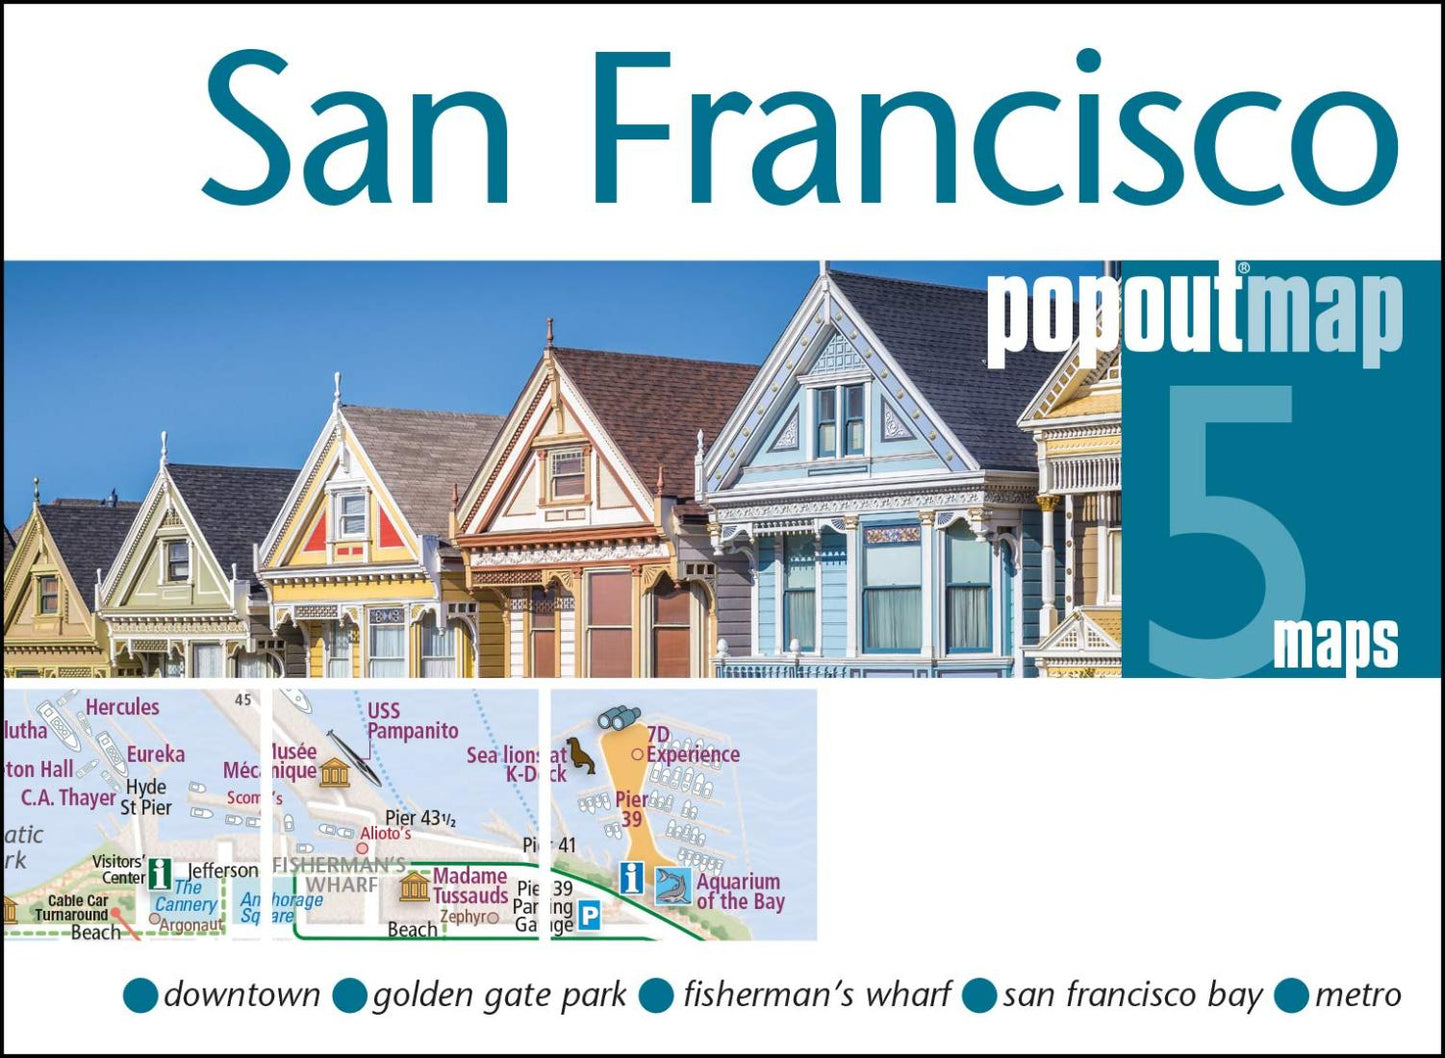 San Francisco : popoutmap : 5 maps downtown : Golden Gate Park : Fisherman's Wharf : San Francisco Bay : transit